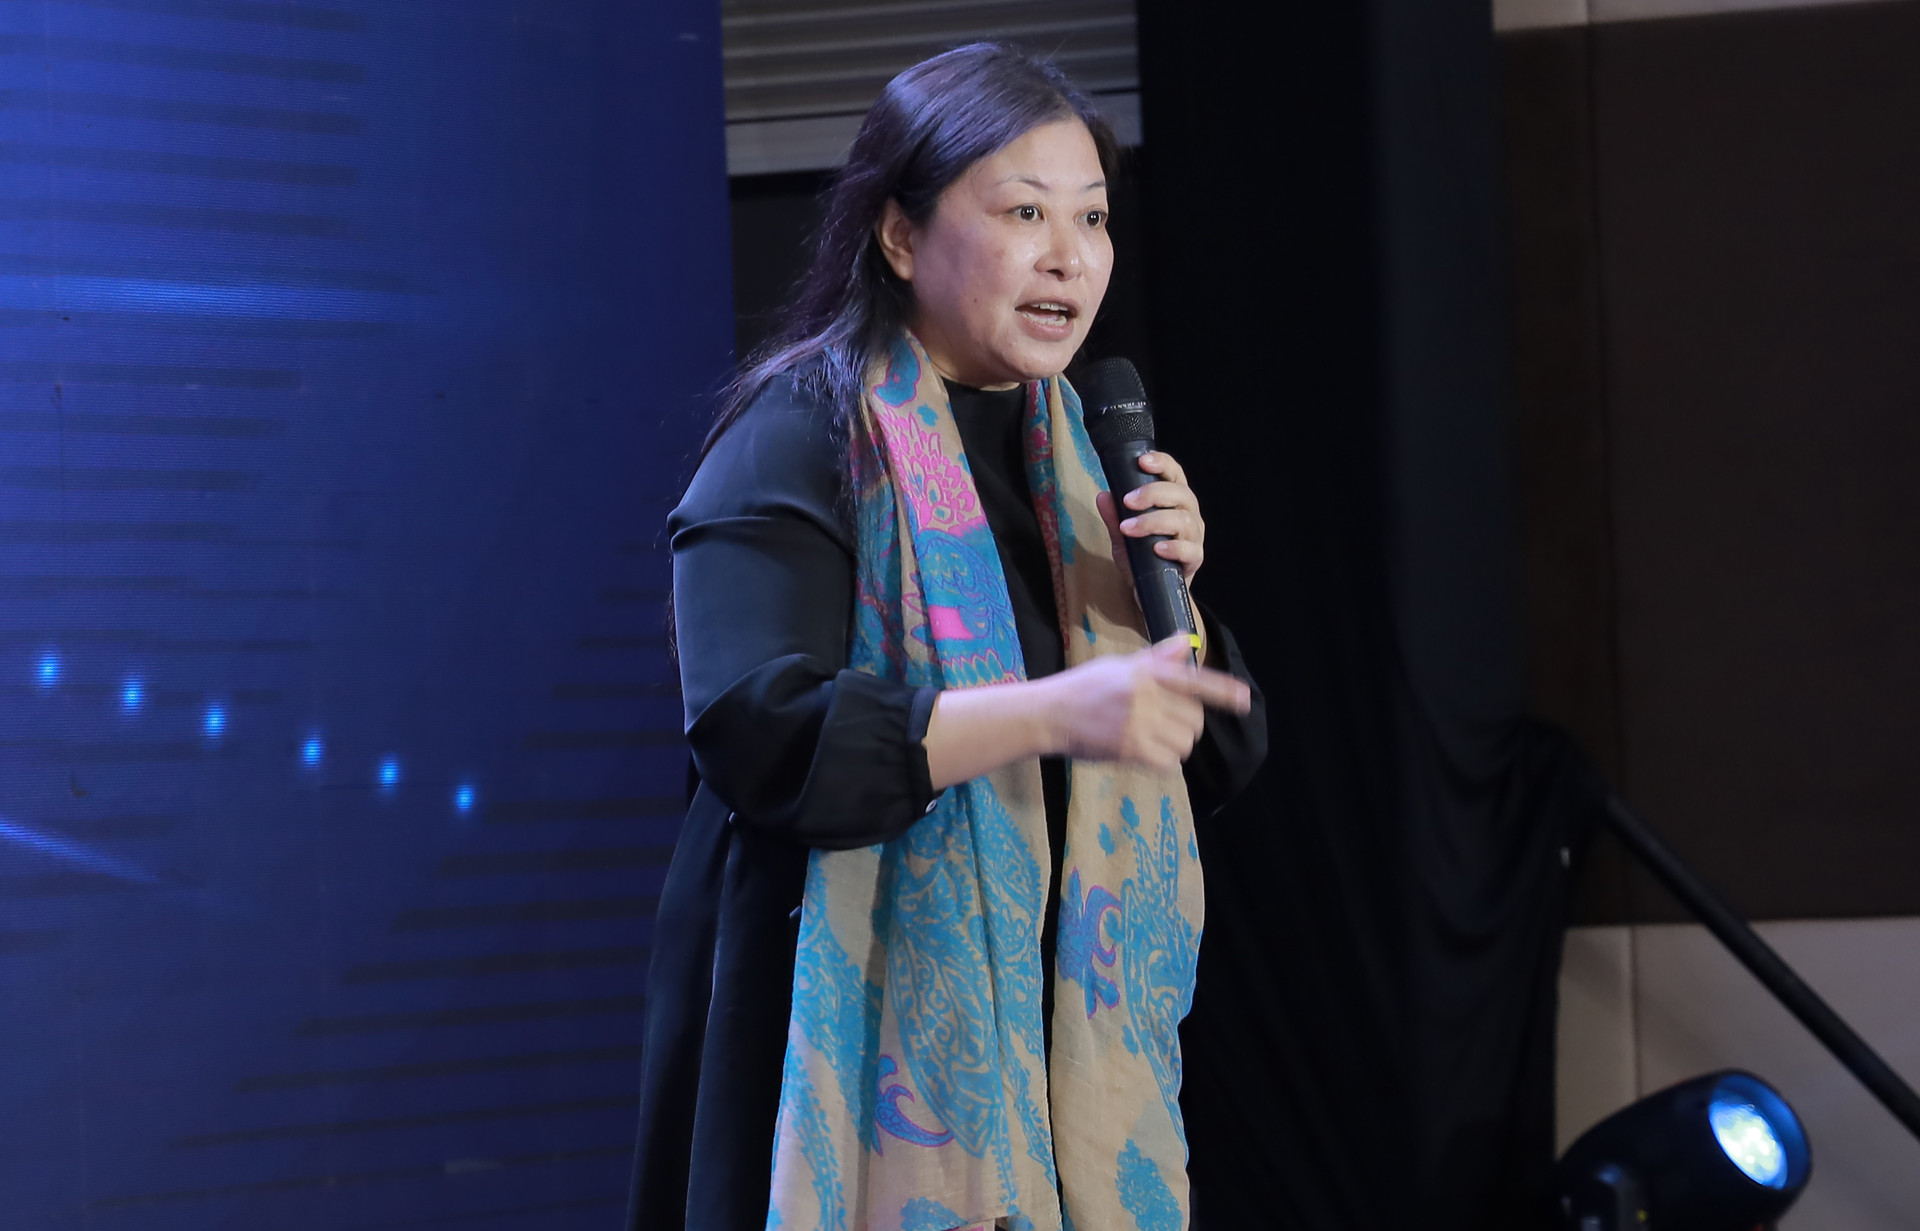 Chuyên gia Nguyễn Phi Vân: "Muốn công ty lớn gấp 100 lần thì tư duy của founder cũng phải lớn gấp 100"